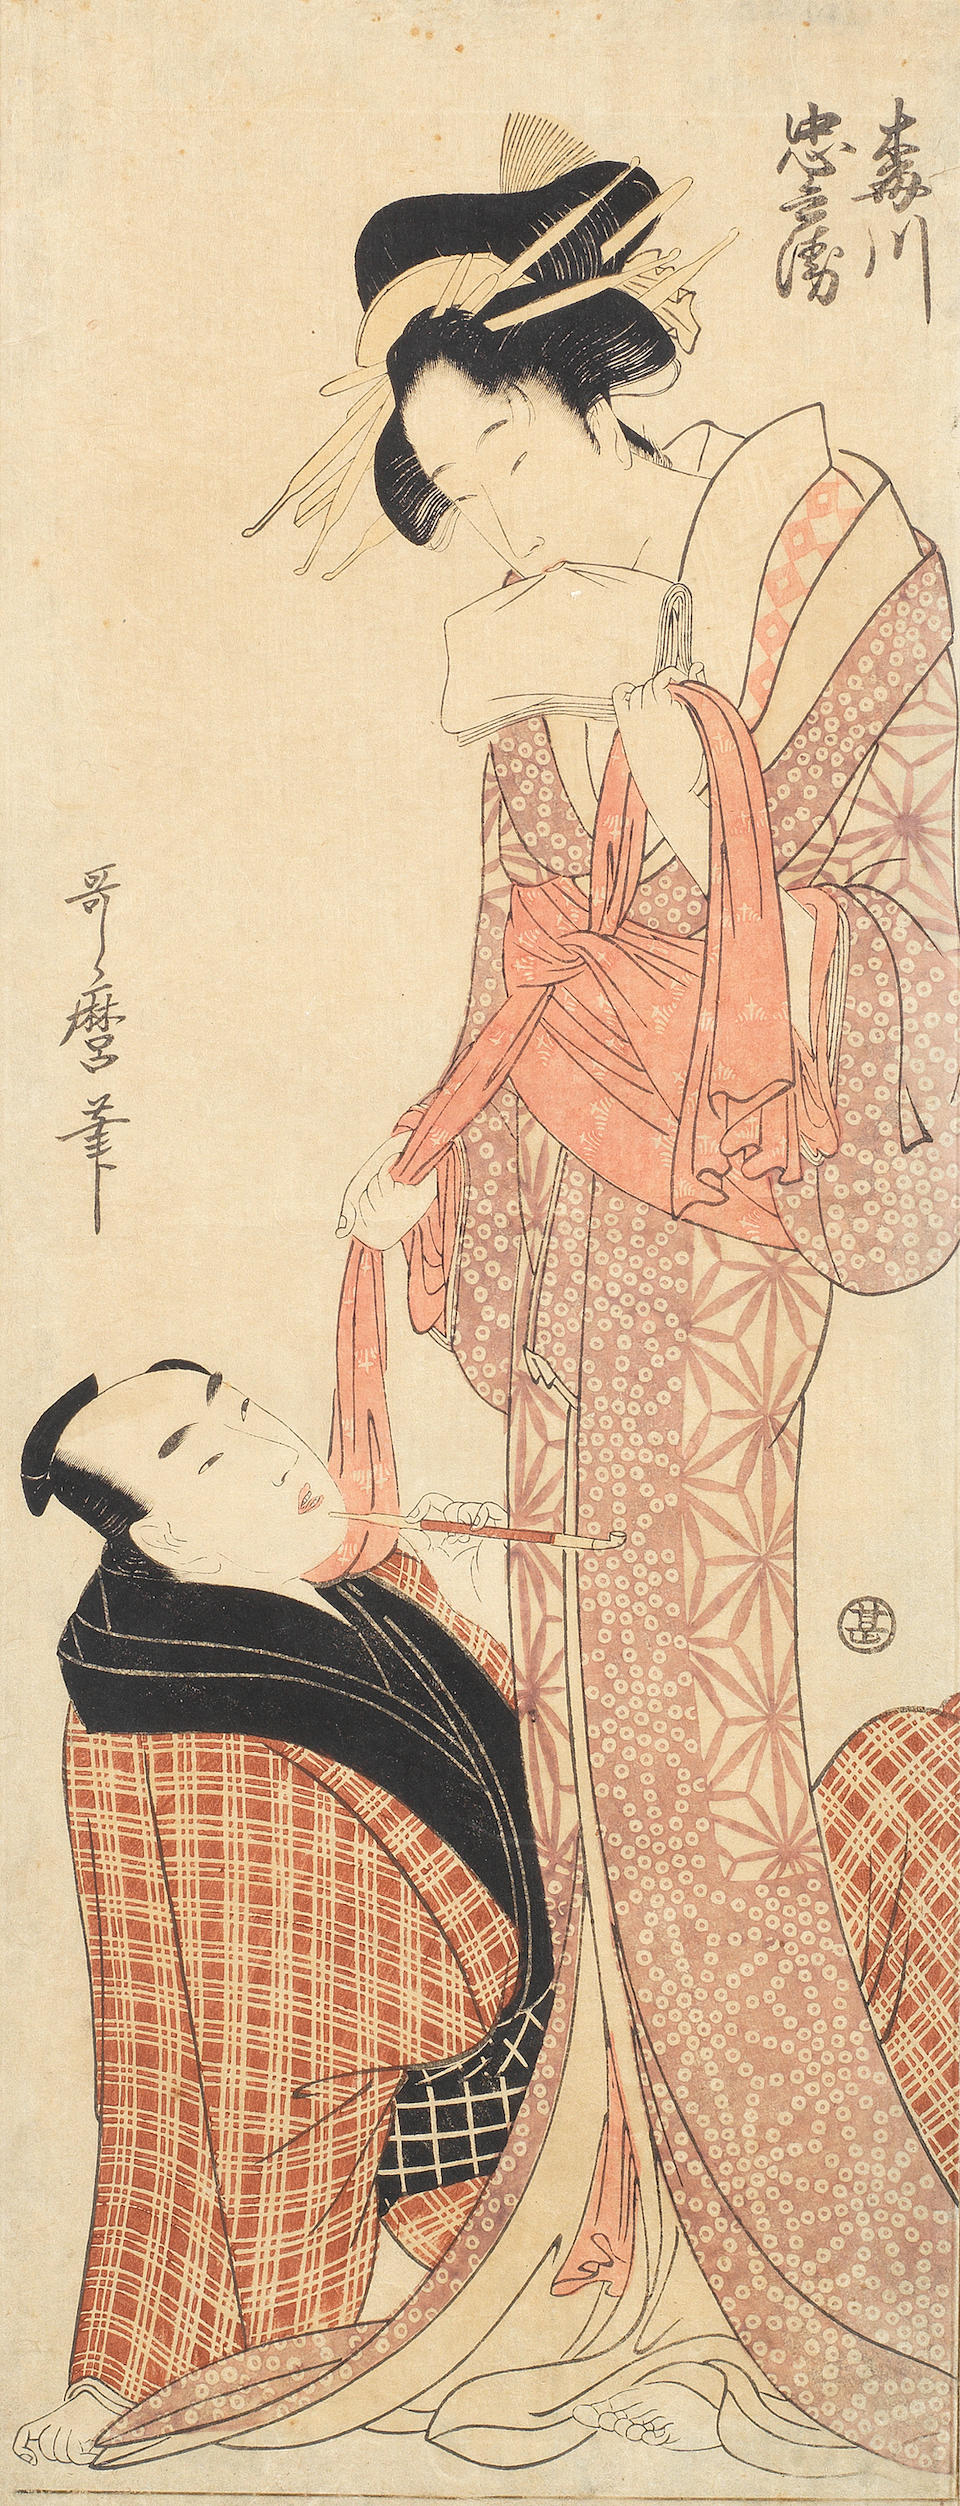 Kitagawa Utamaro (1753-1806), Chobunsai Eishi (1756-1829), Keisai Eisen (1790-1848) and others Late 18th to 19th century